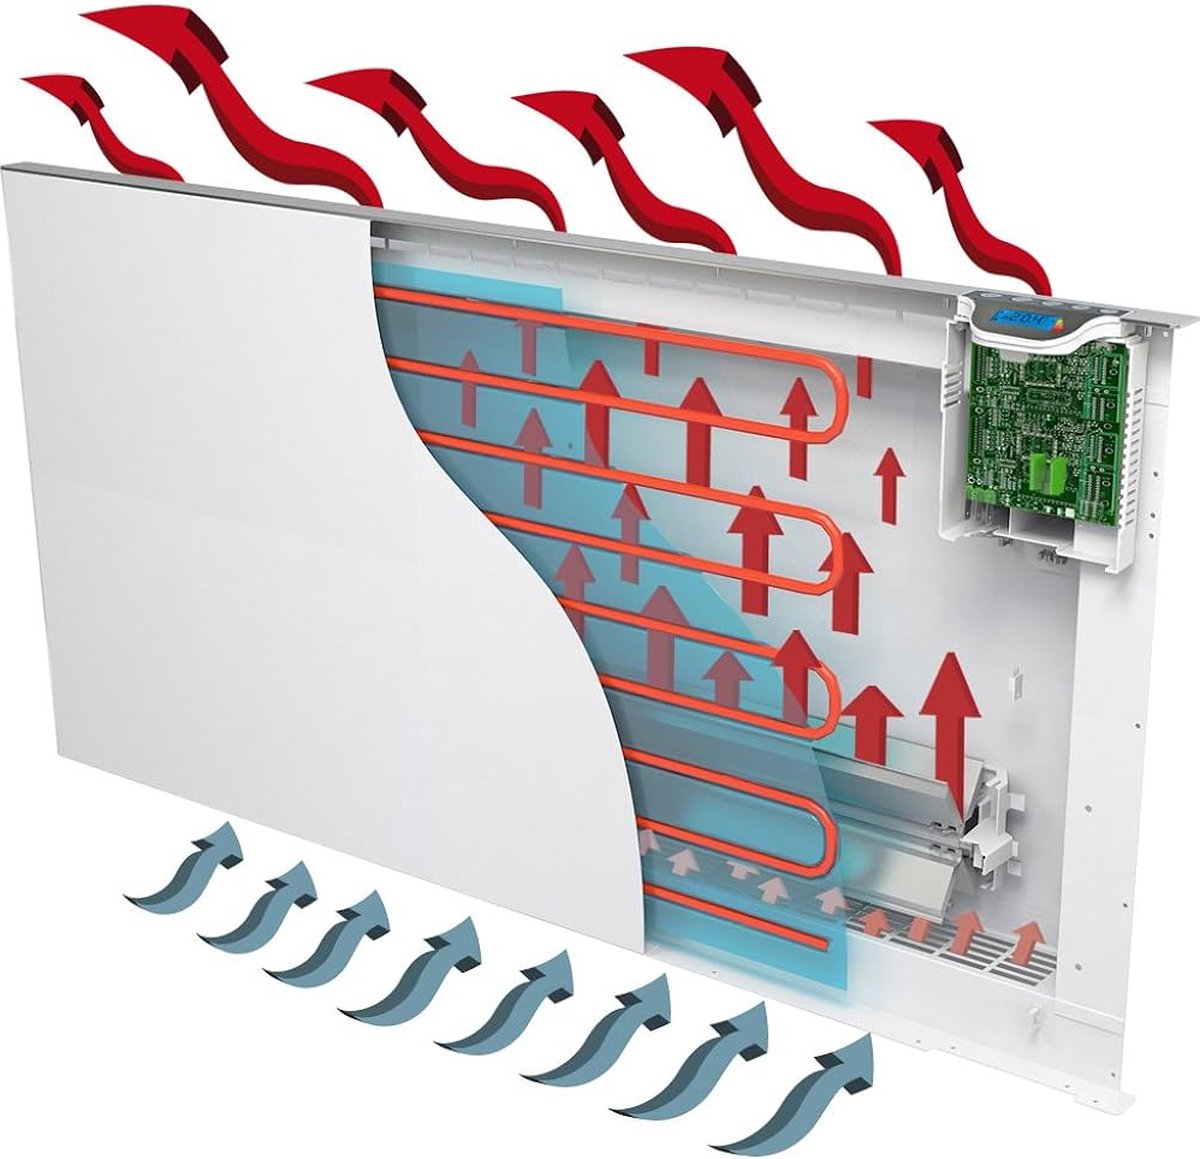 Radialight Klima WIT 750W - Infrarood verwarmen én elektrische radiator in één toestel - Ingebouwde thermostaat met display en weekprogramma - Antivries functie - Openraamsensor - Kinderslot - Gebruik in badkamer (IP24)